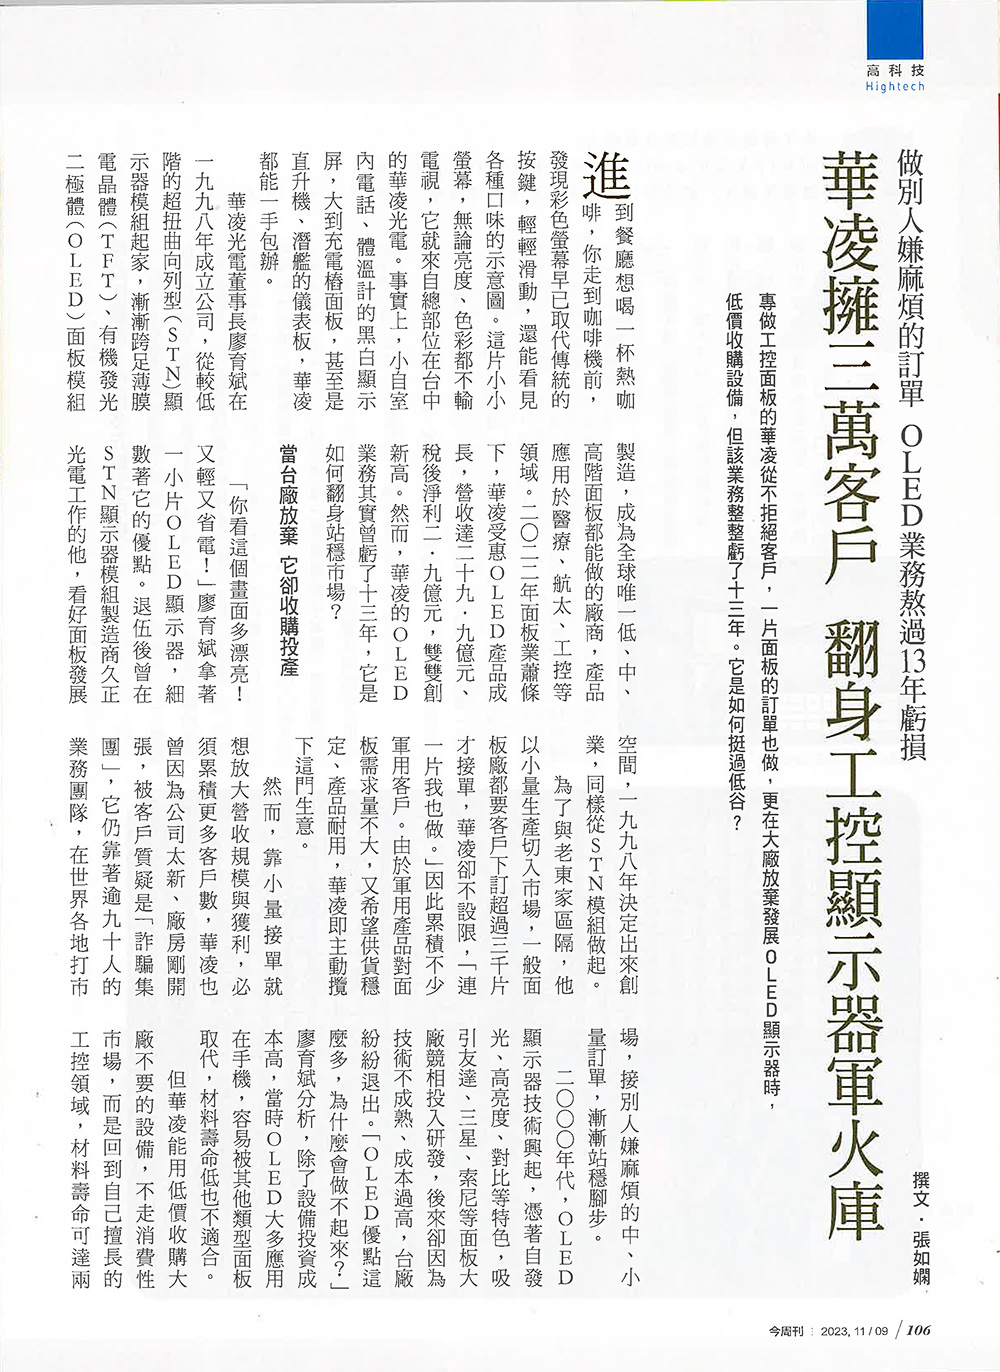 【今周刊】華凌擁有三萬客戶 翻身工控顯示器軍火庫 報導